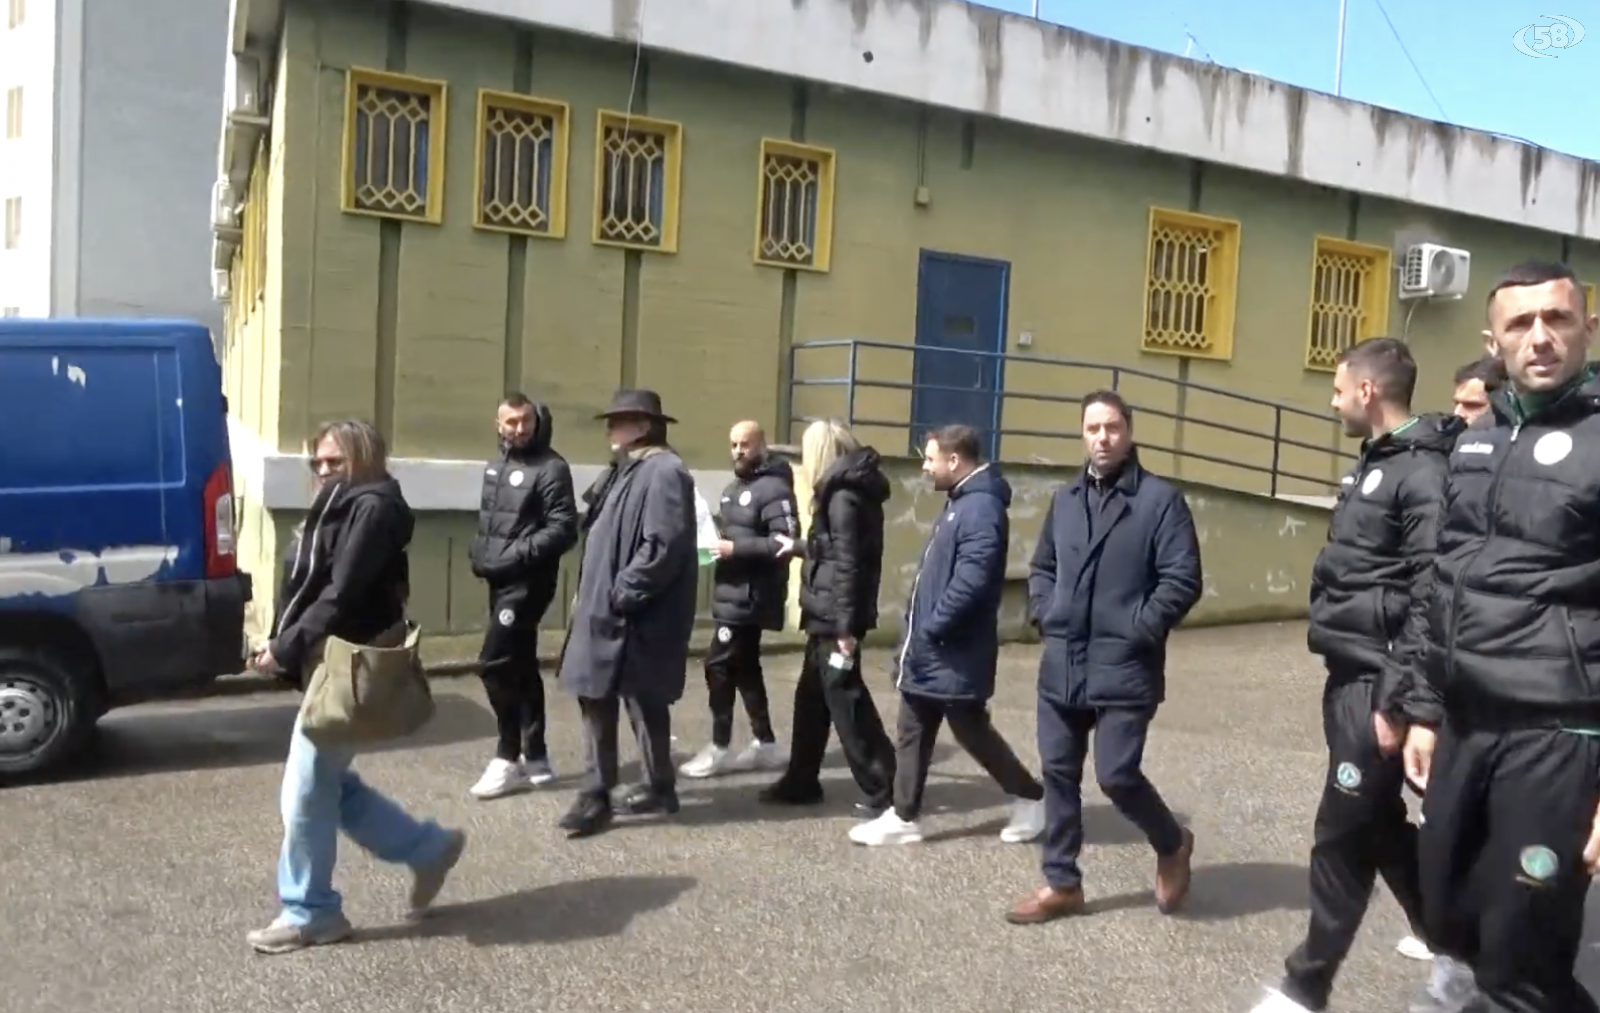 Sport in carcere, ad Ariano l'Us Avellino /VIDEO